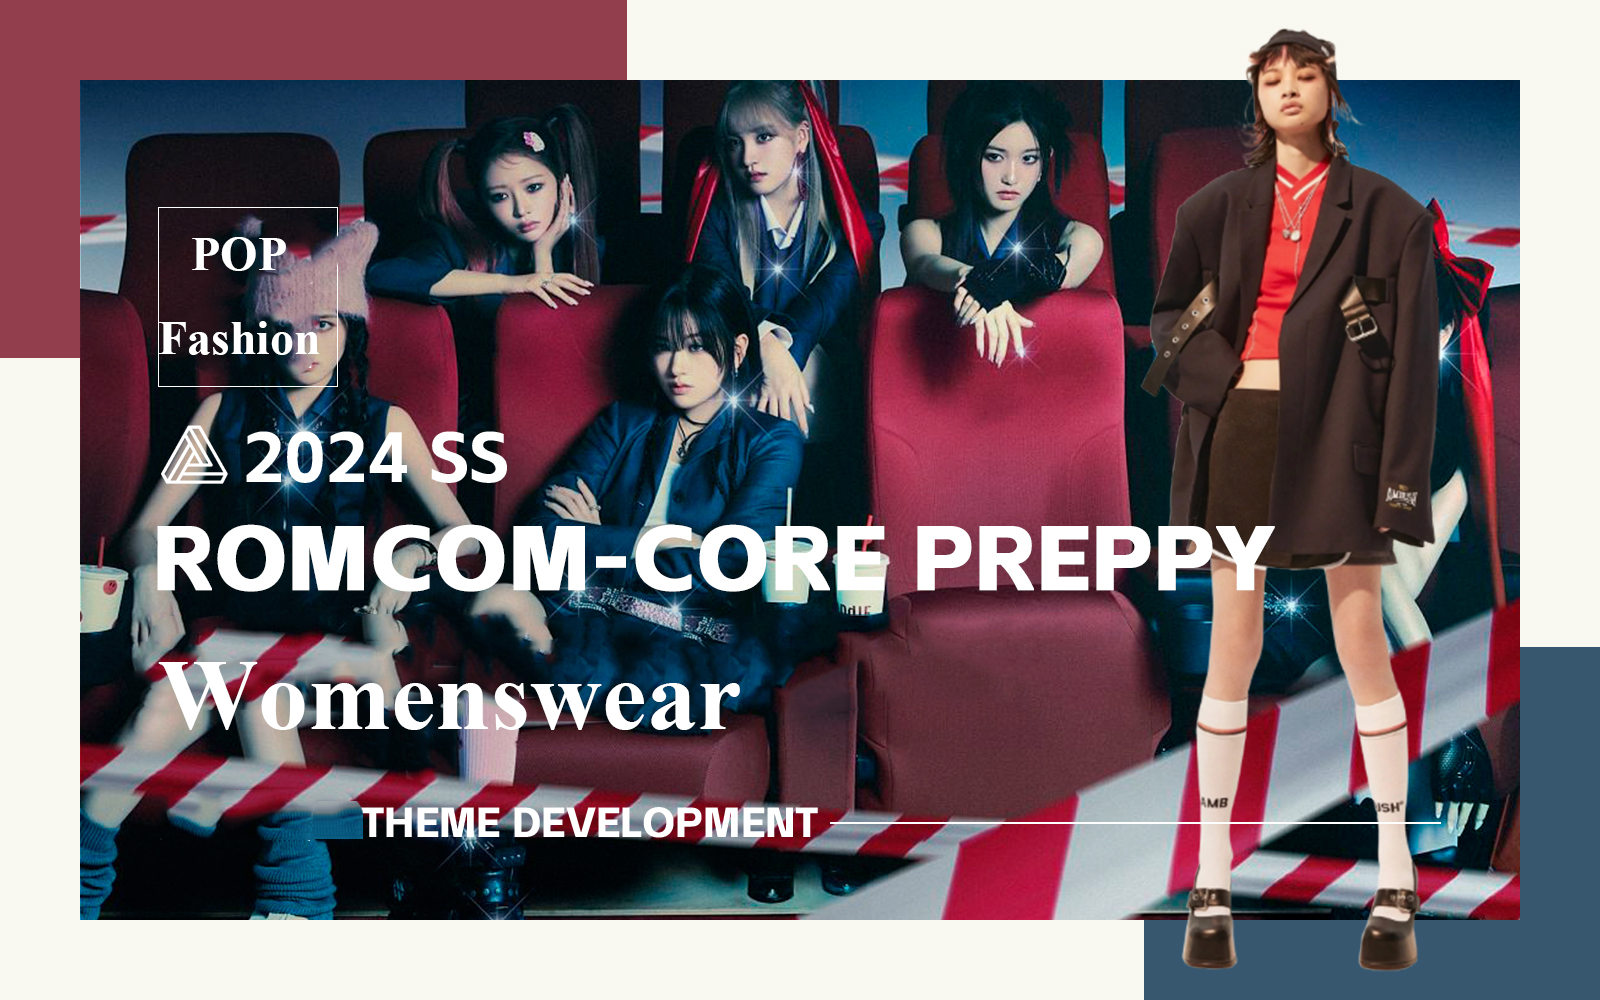 Romcom-Core Preppy -- The E-Commerce Design Development of Womenswear